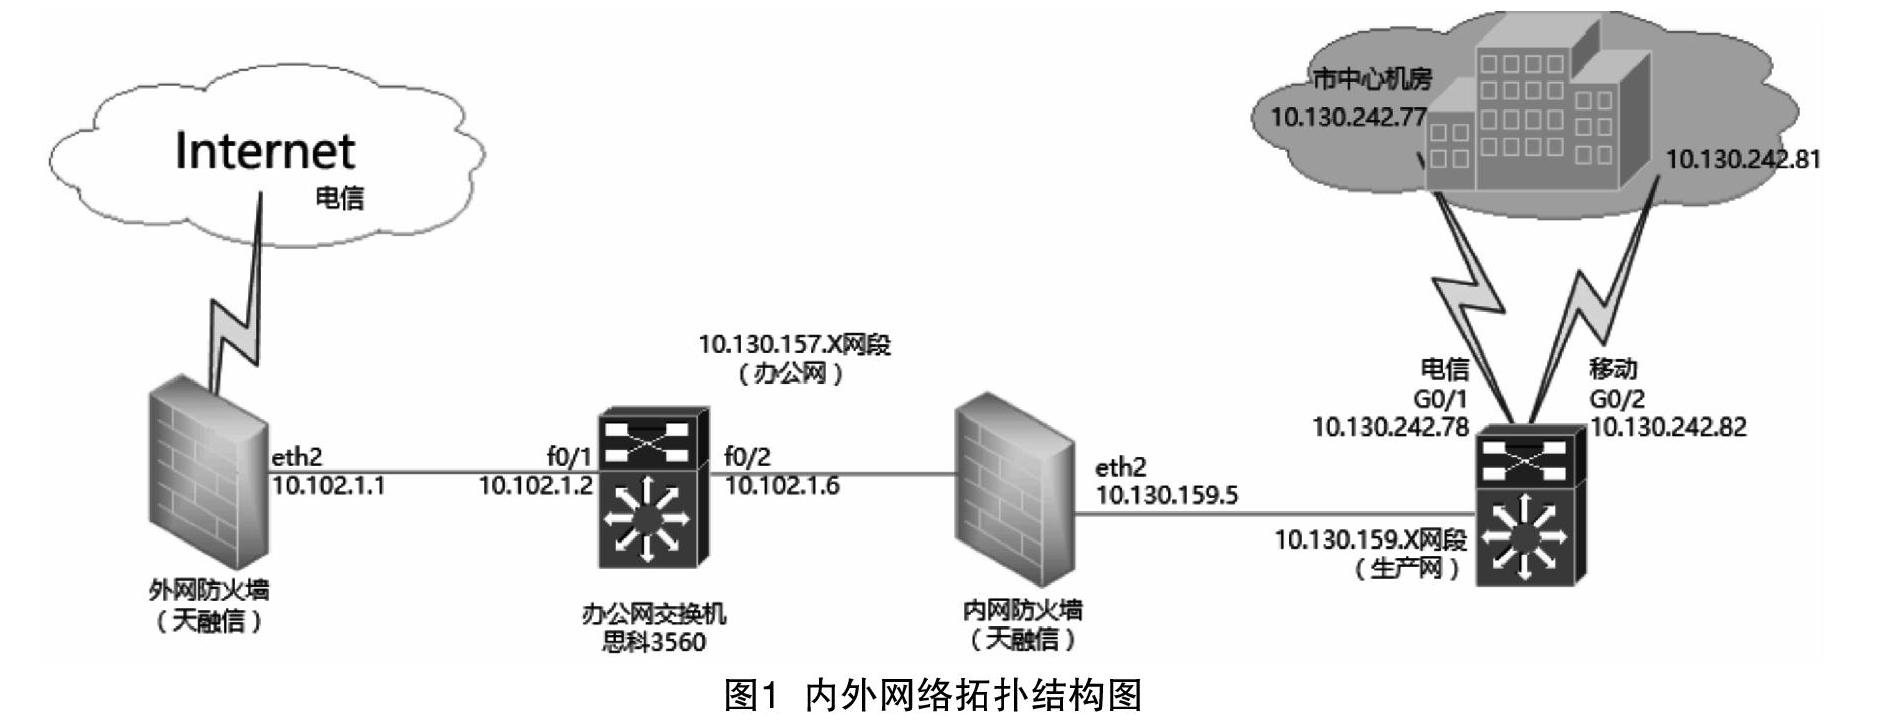 摘要:本文以徐州市邮区中心局网络结构为背景,介绍了内外网络拓扑结构